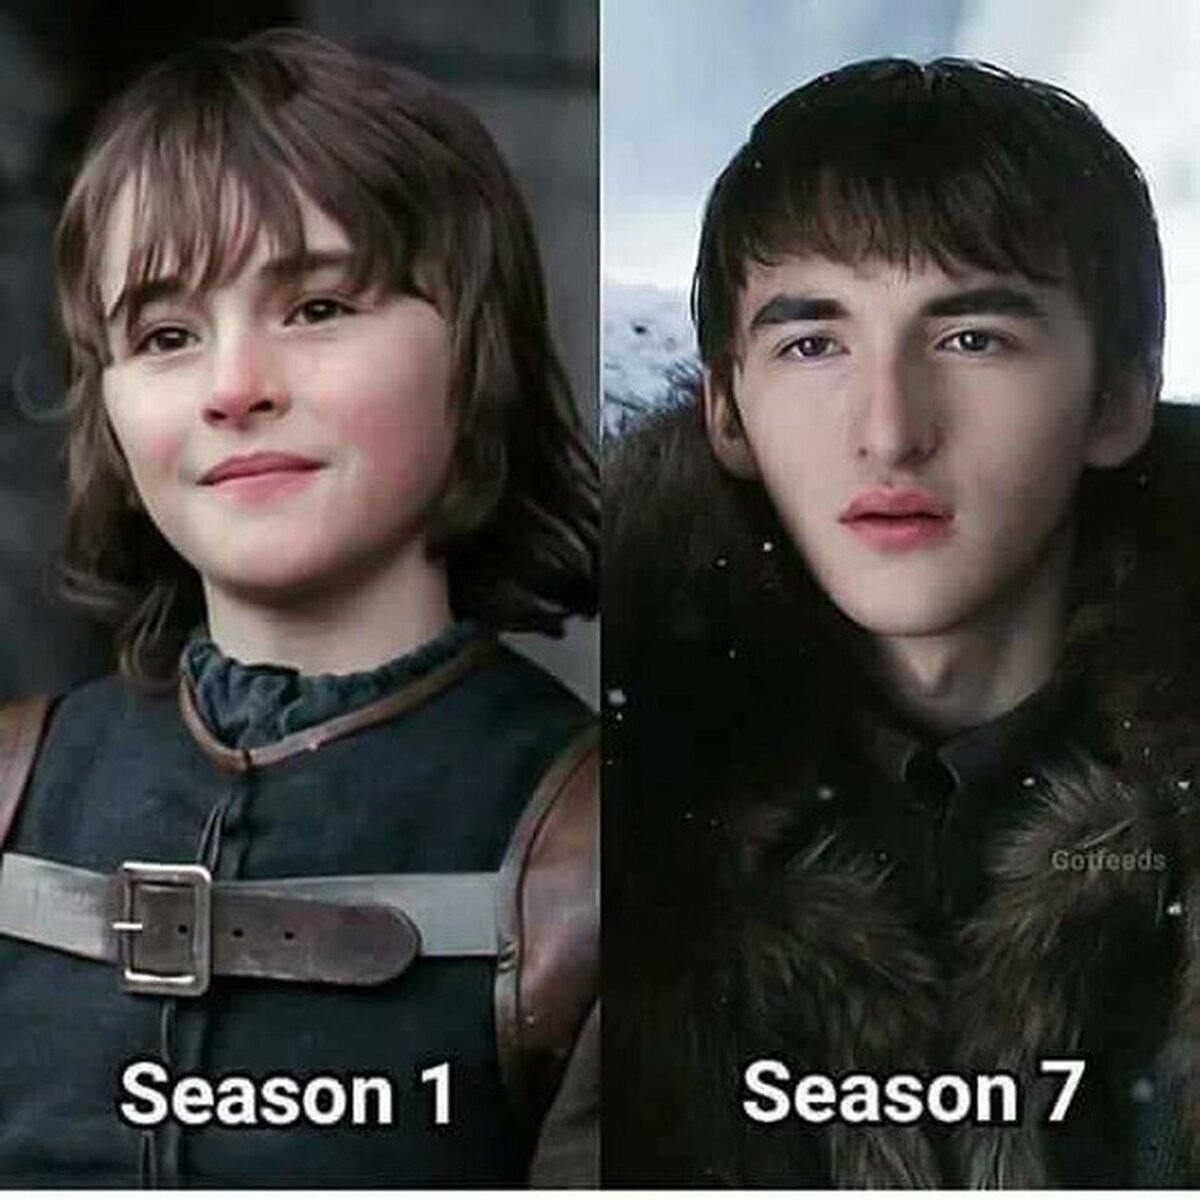 El tiempo no ha sido generoso con el pobre Bran